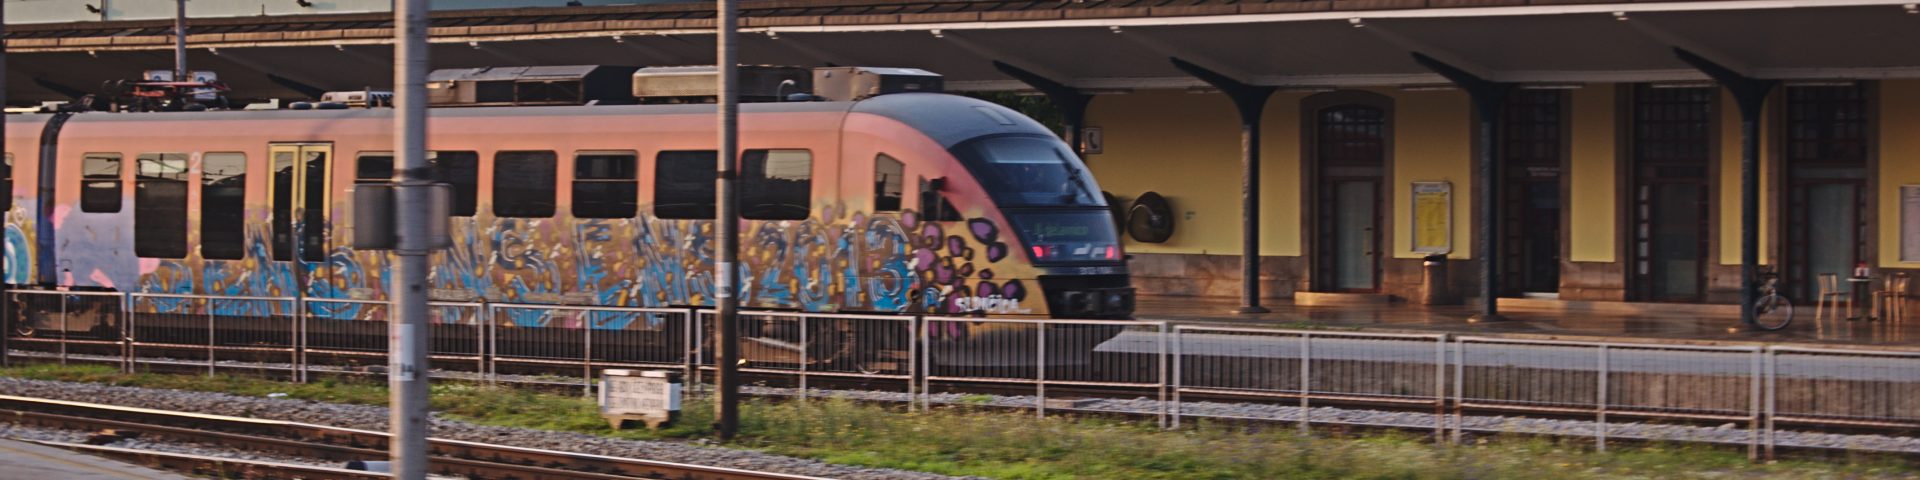 Zug in slowenien interrail planen alter zug mit grafitti